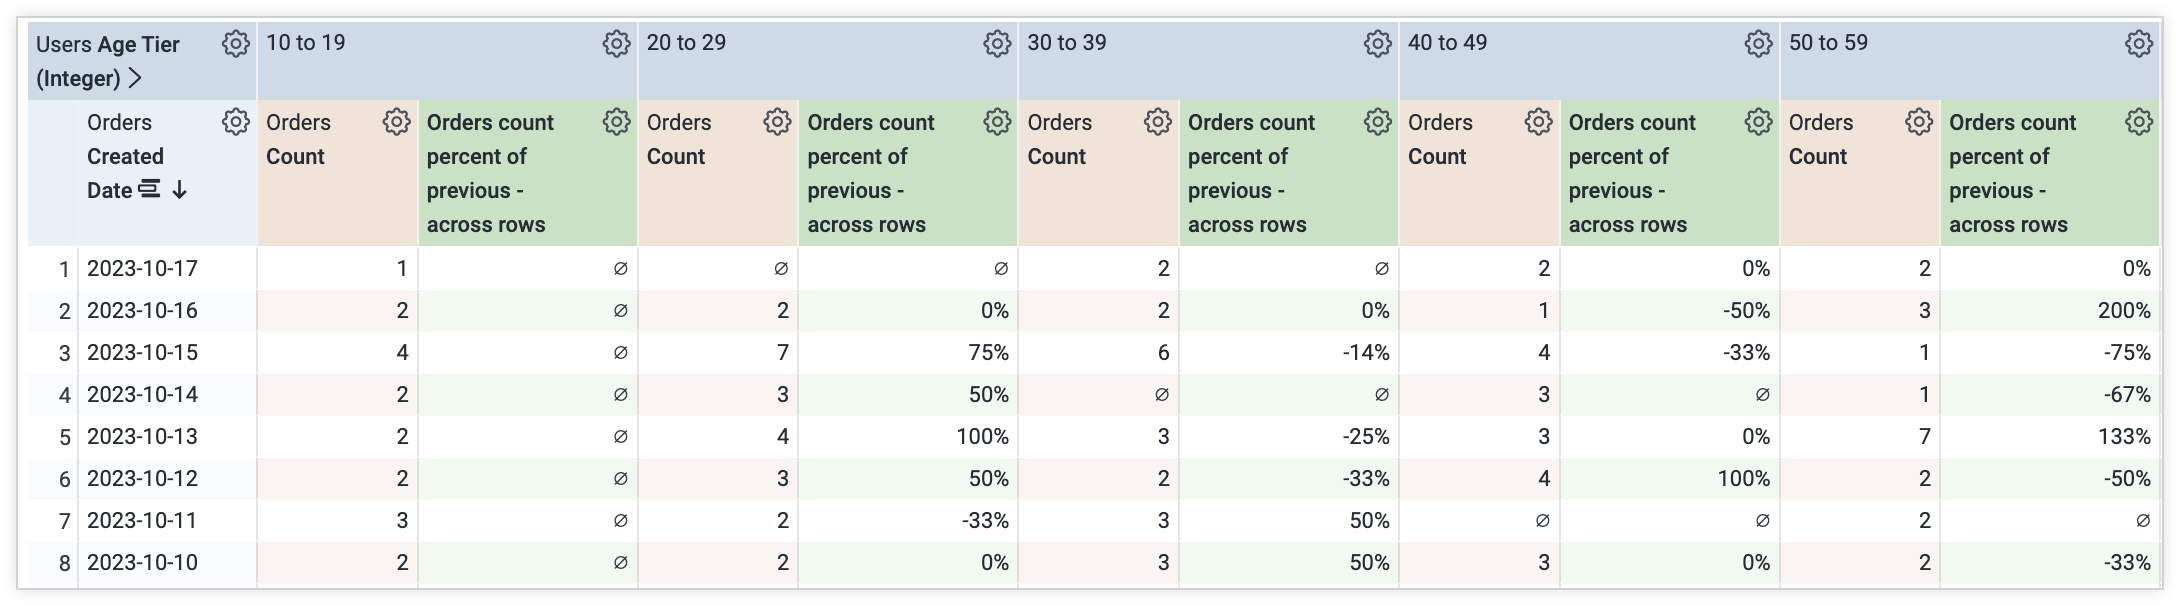 Explore-Datentabelle mit einer neuen Pivot-Spalte für die prozentuale Änderung der Anzahl der Bestellungen bei spaltenübergreifender Tabellenberechnung.